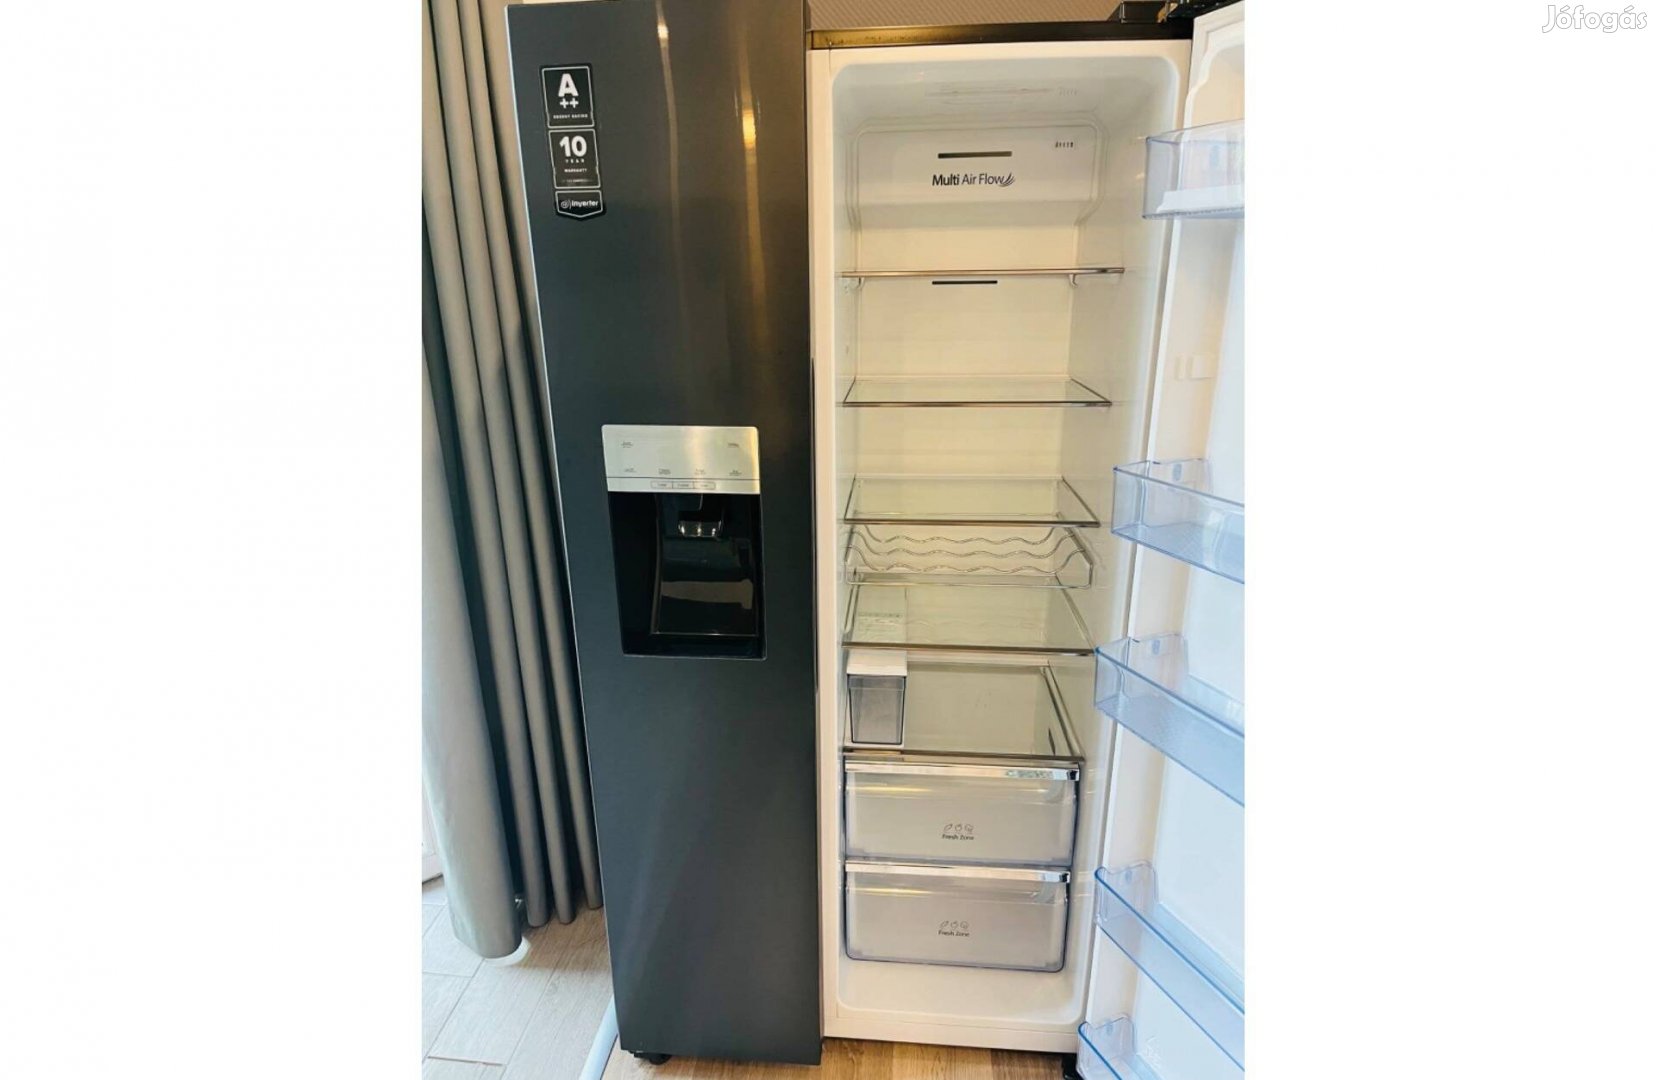 Amerikai tipusú használt kombinalt hűtő-fagyasztó szekrény